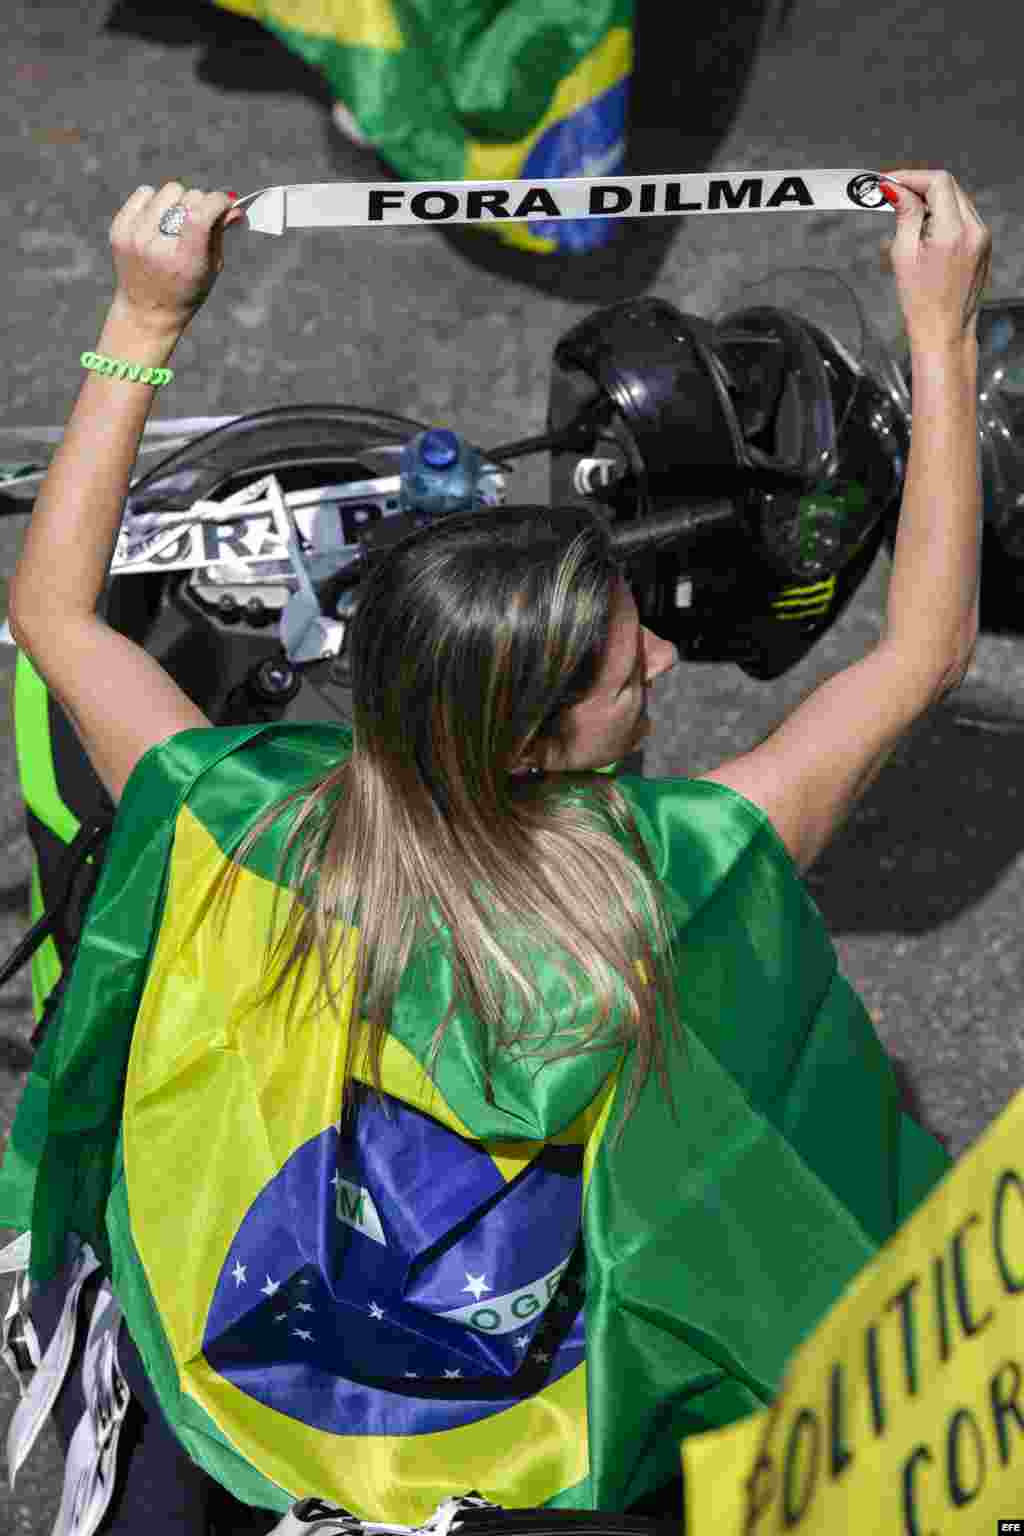 Un manifestante participa en una protesta contra el Gobierno de Dilma Rousseff hoy, domingo 16 de agosto de 2015, en la ciudad de Sao Paulo (Brasil)